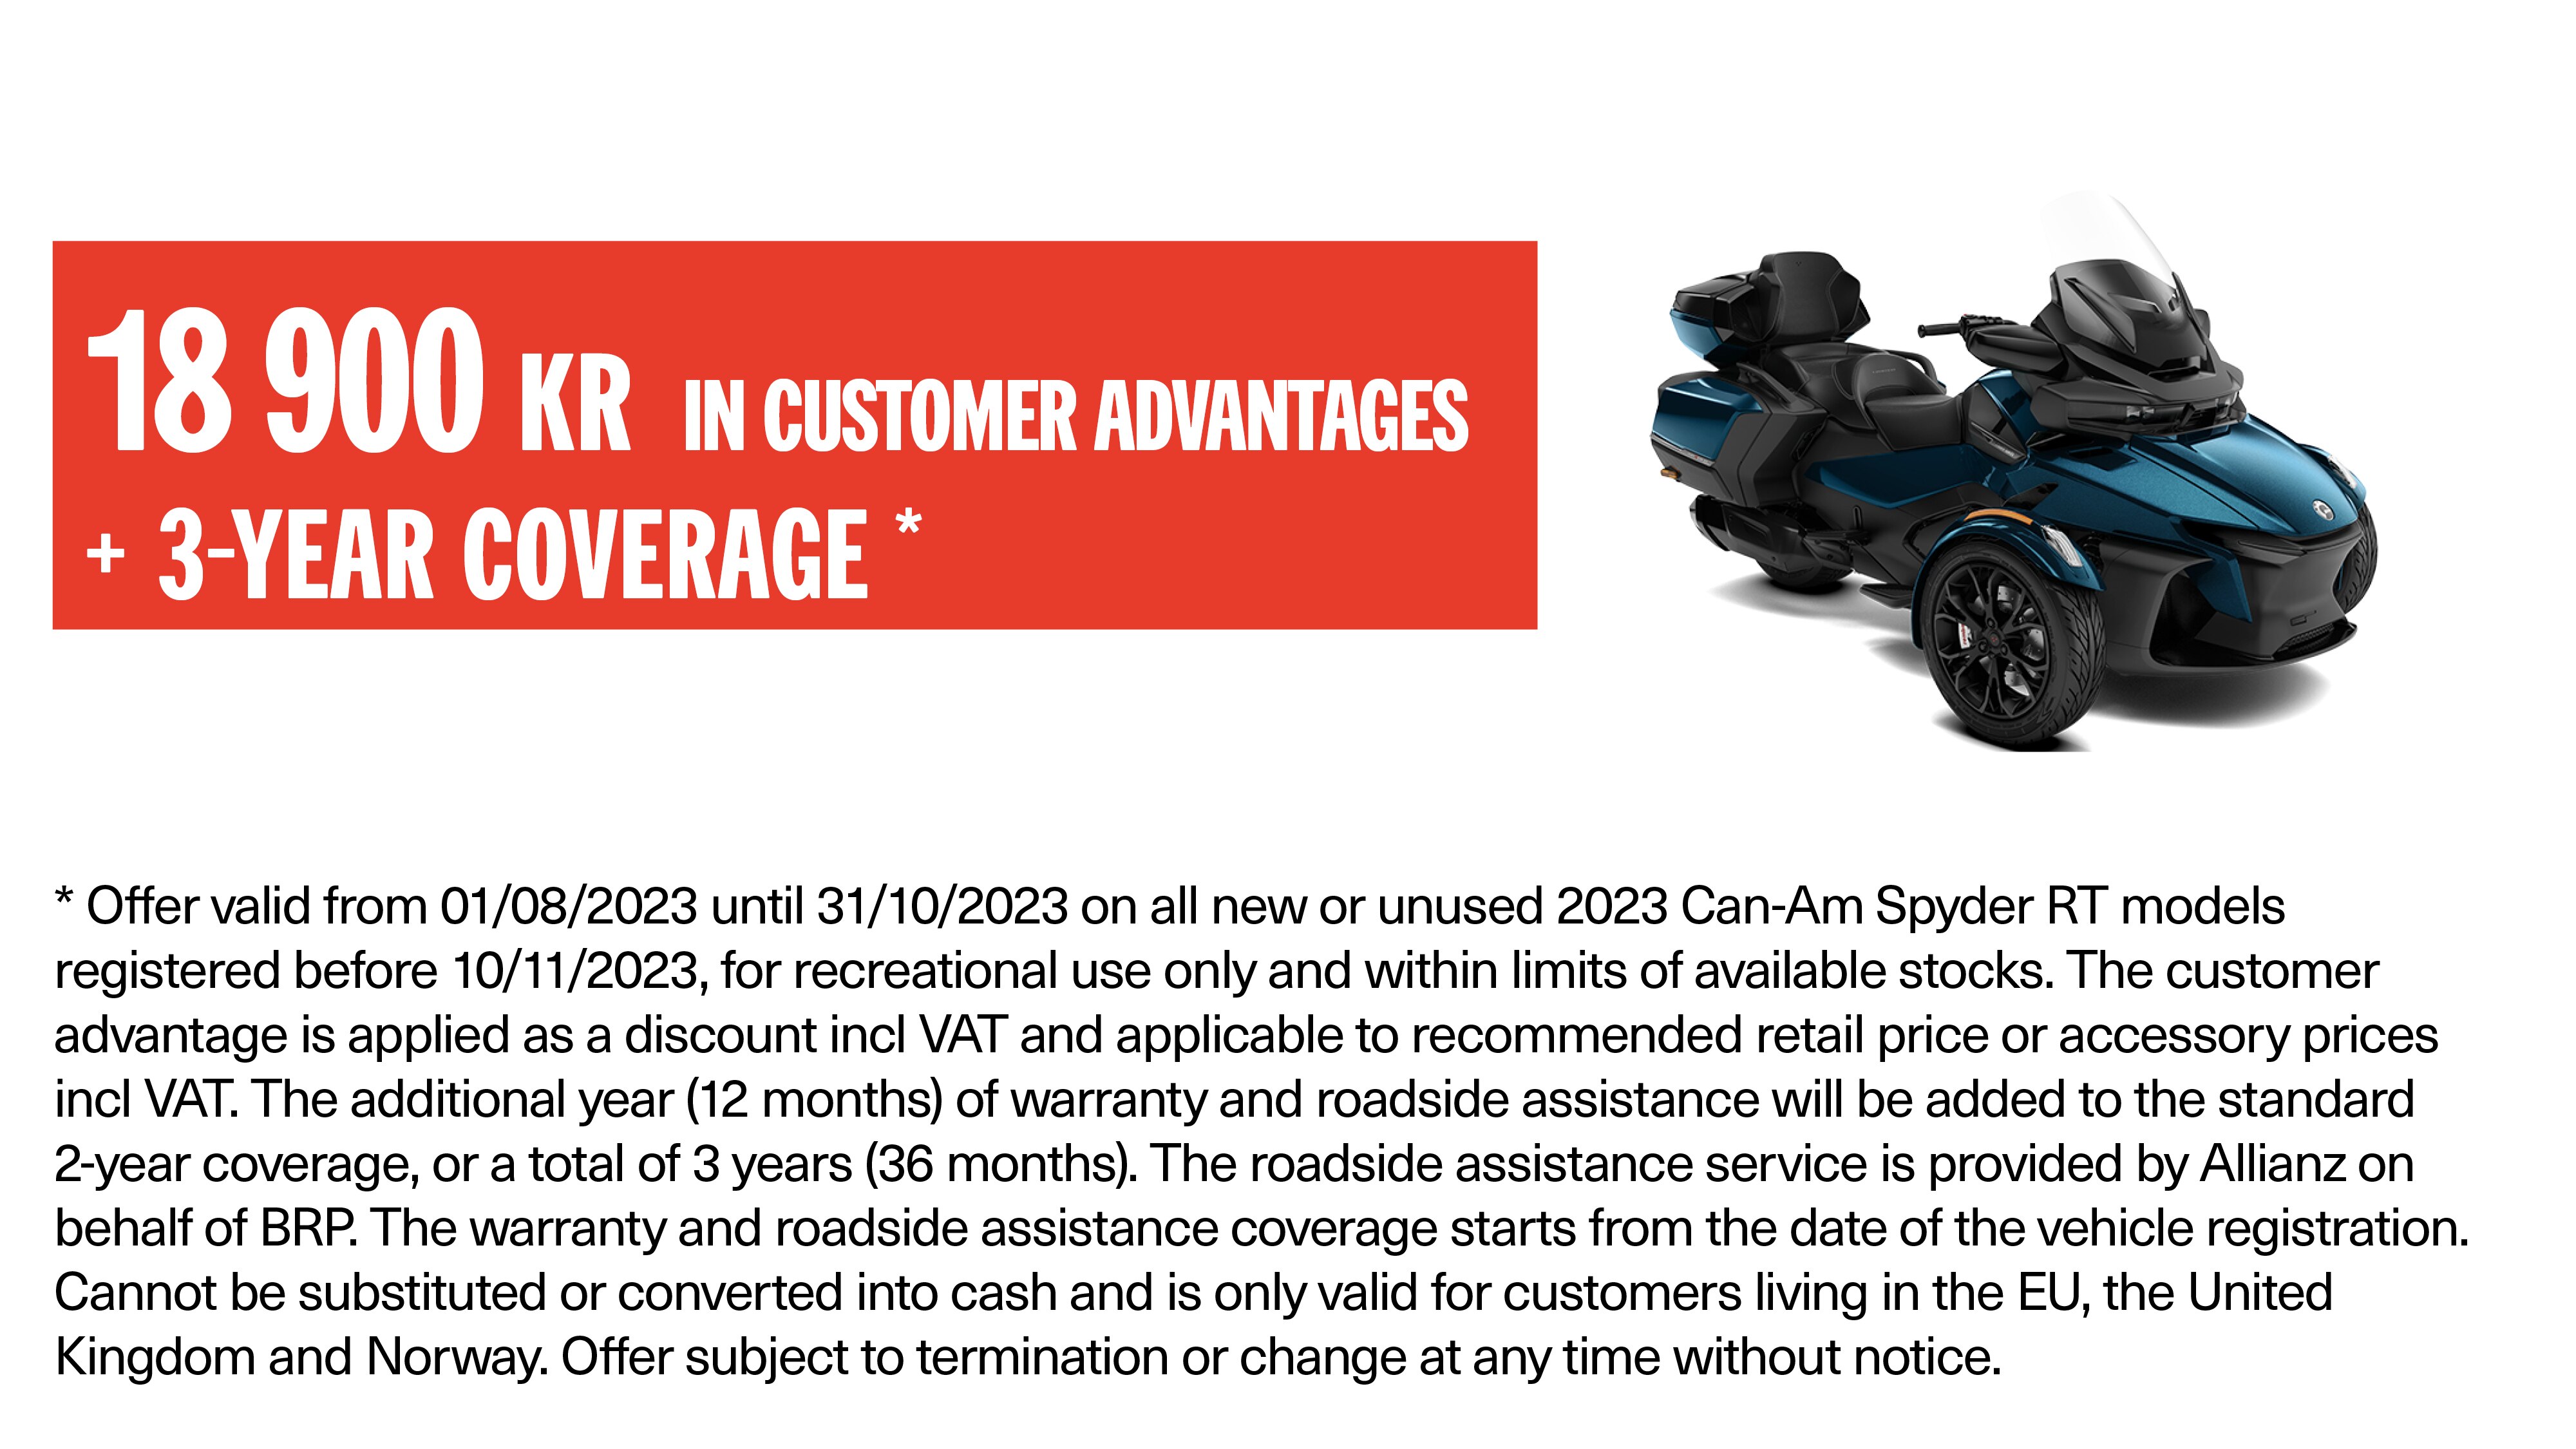 Can-Am Spyder RT 2023